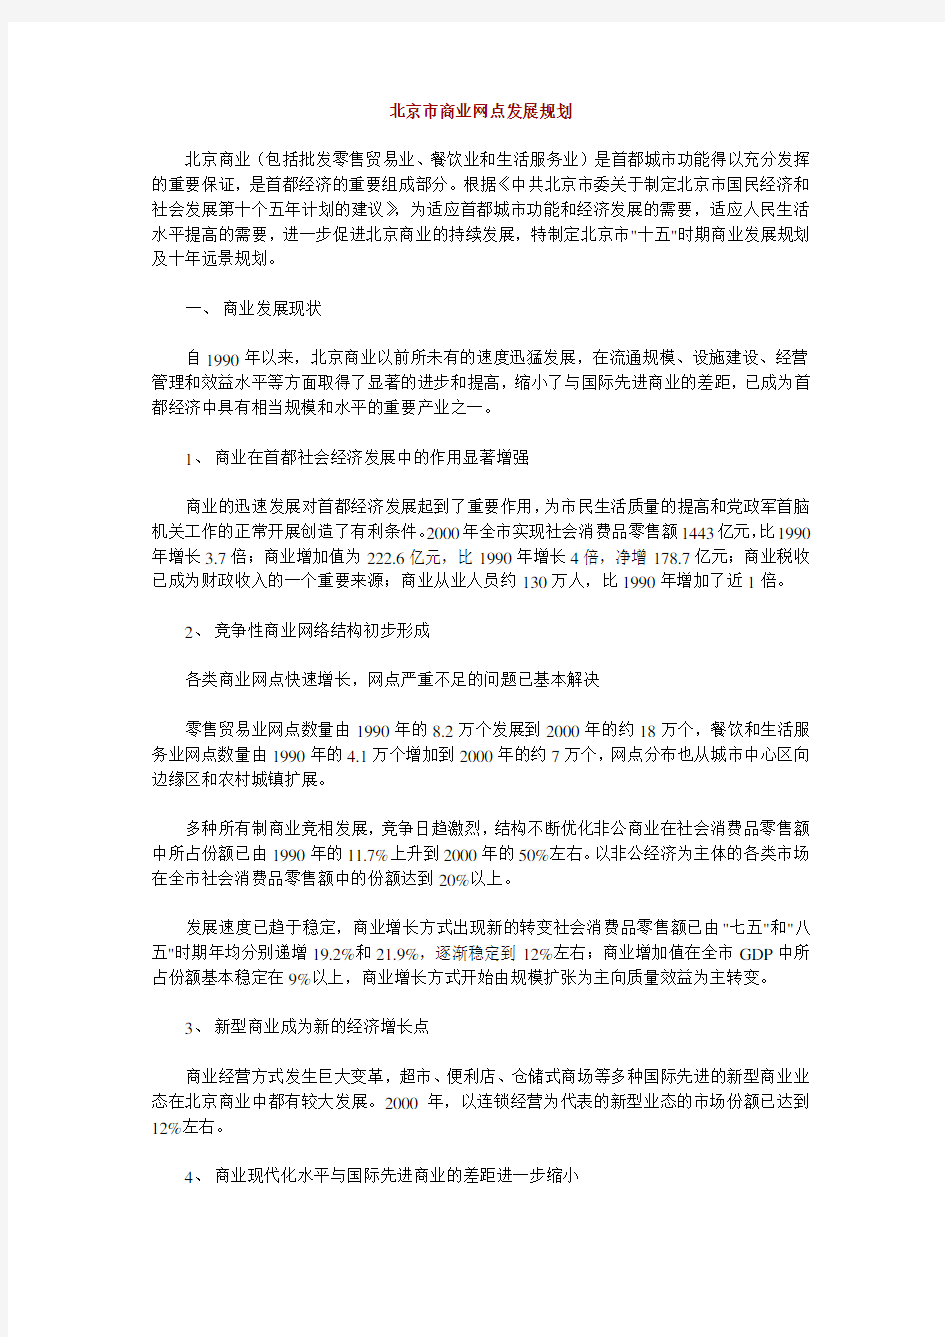 (发展战略)北京市商业网点发展规划